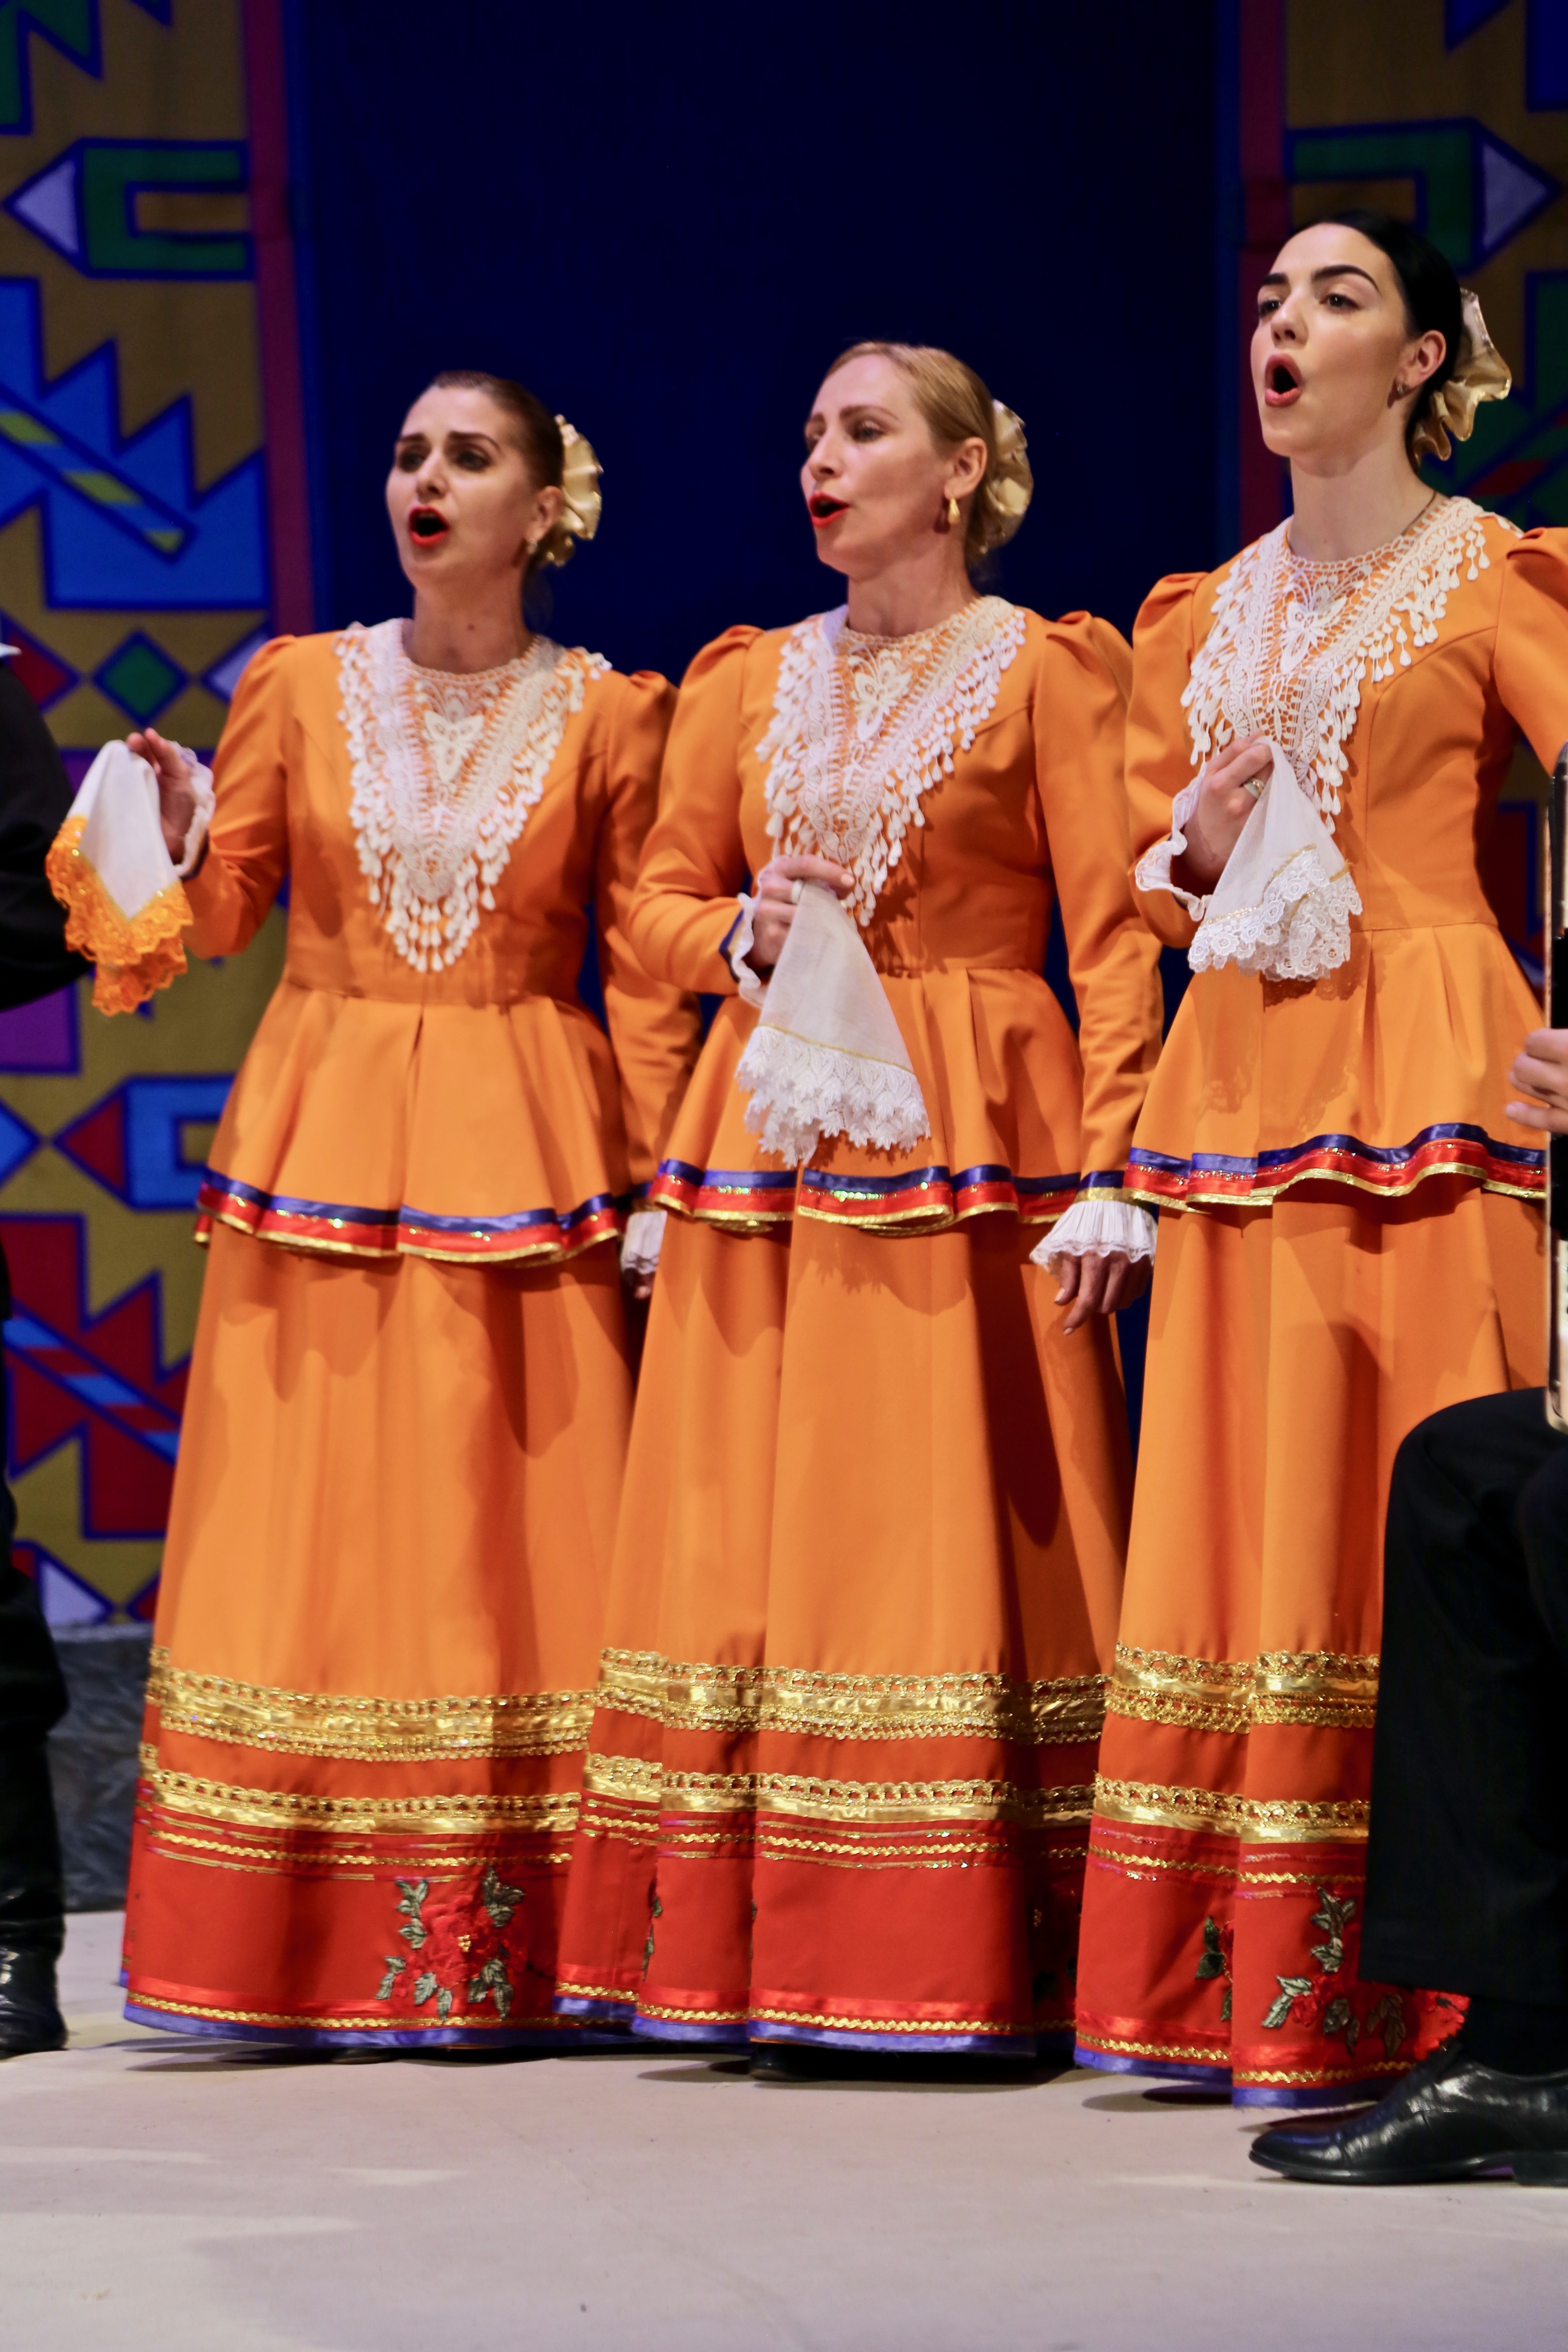 Всероссийский хоровой фестиваль